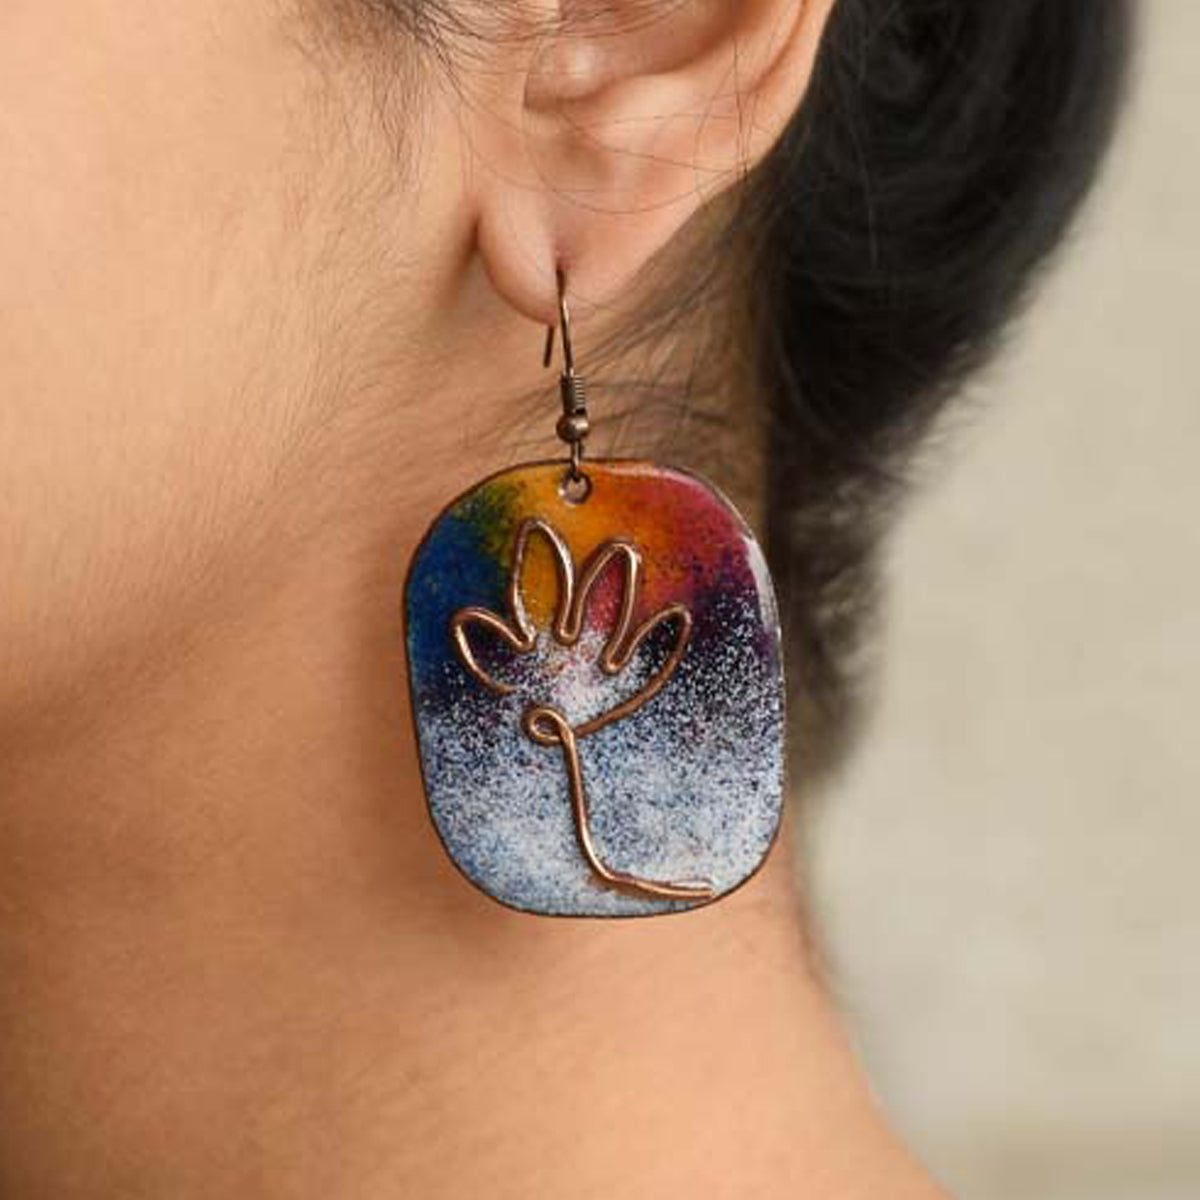 Buy Pearls Lotus Gold Earrings Earrings Indian Earrings Online in India   Etsy